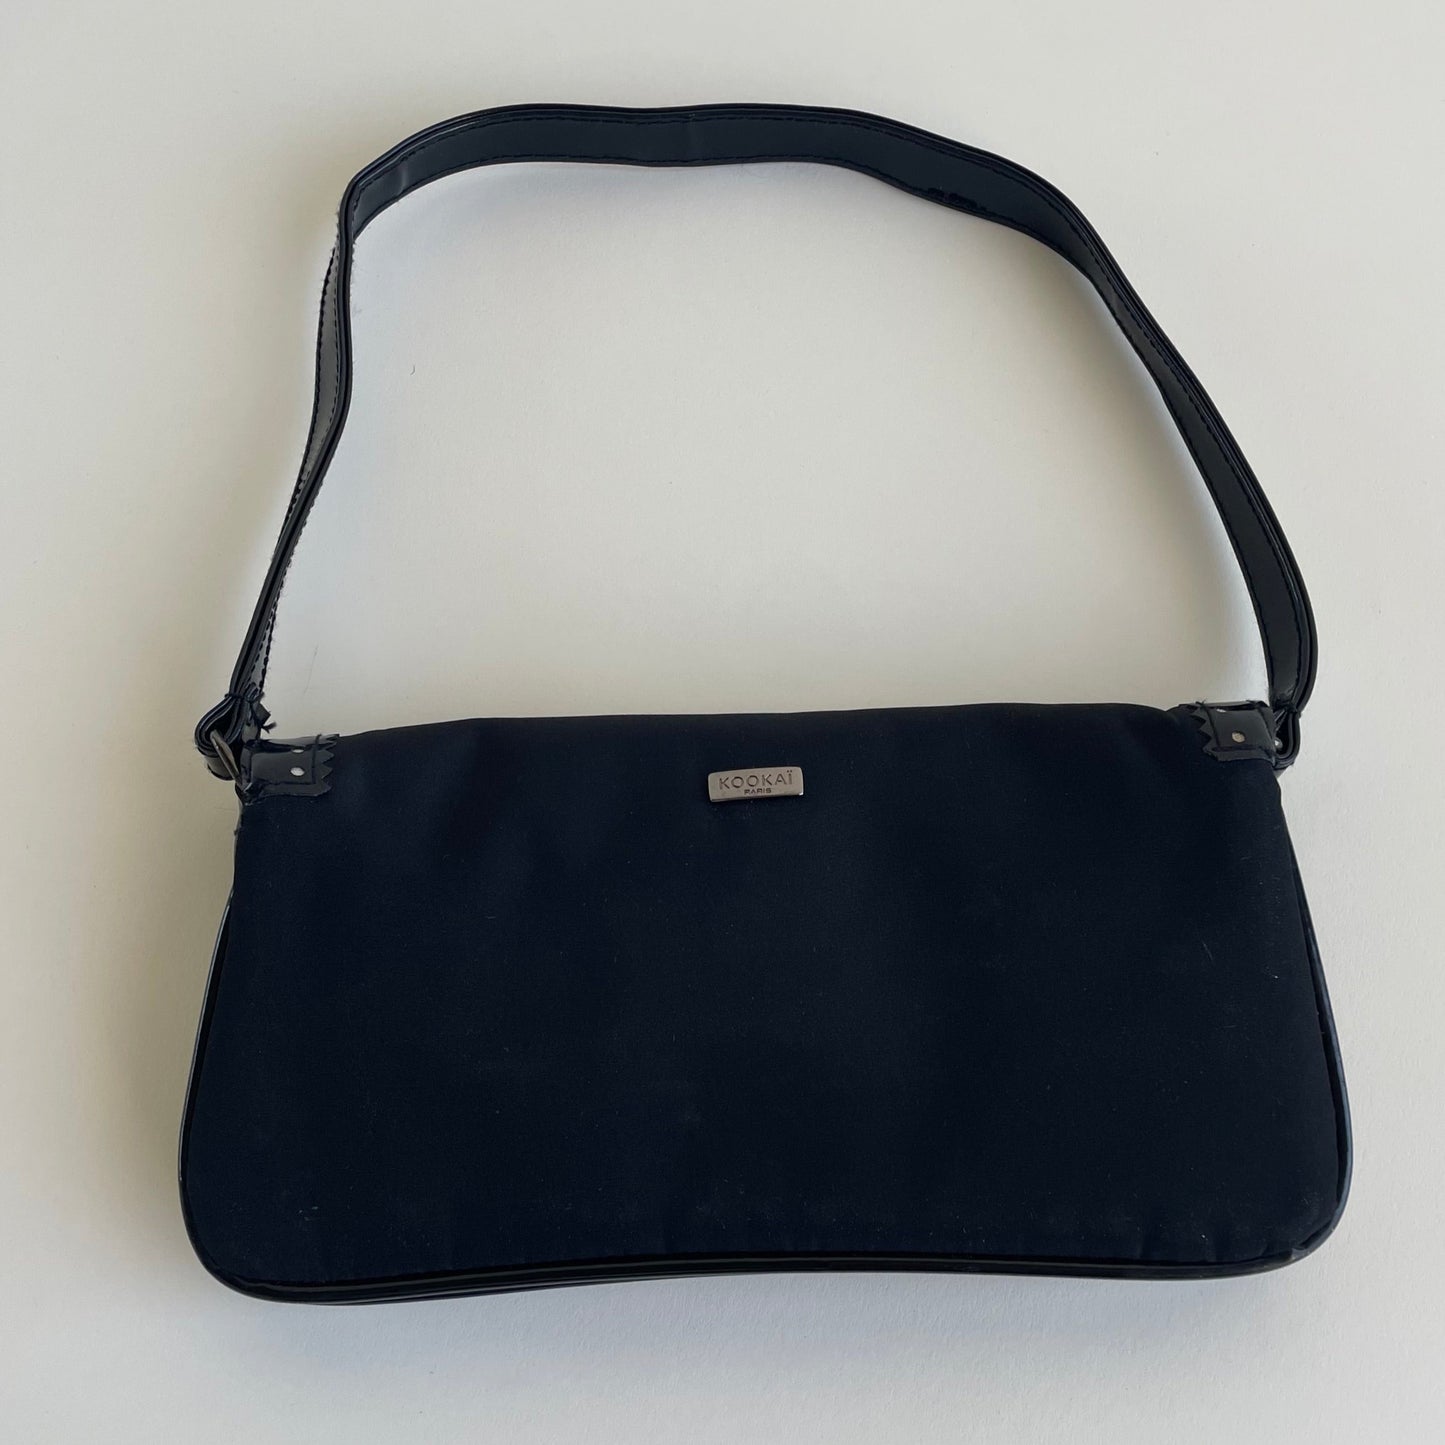 kookai black purse